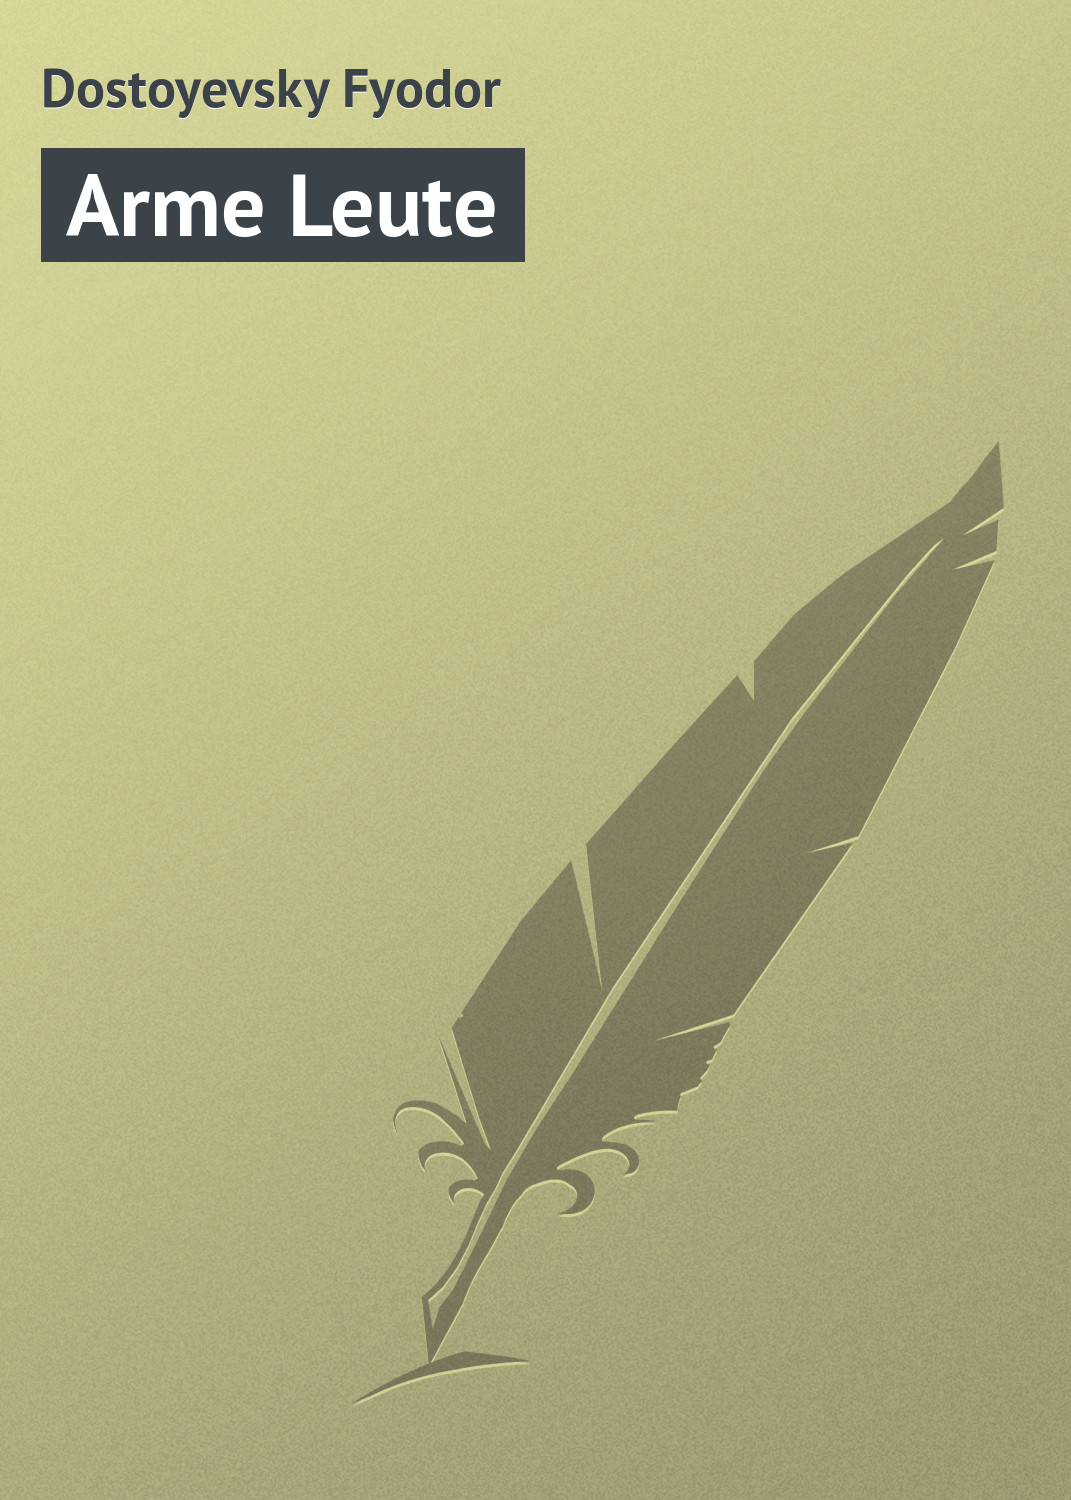 Книга Arme Leute из серии , созданная Fyodor Dostoyevsky, может относится к жанру Зарубежная классика. Стоимость электронной книги Arme Leute с идентификатором 23159963 составляет 5.99 руб.